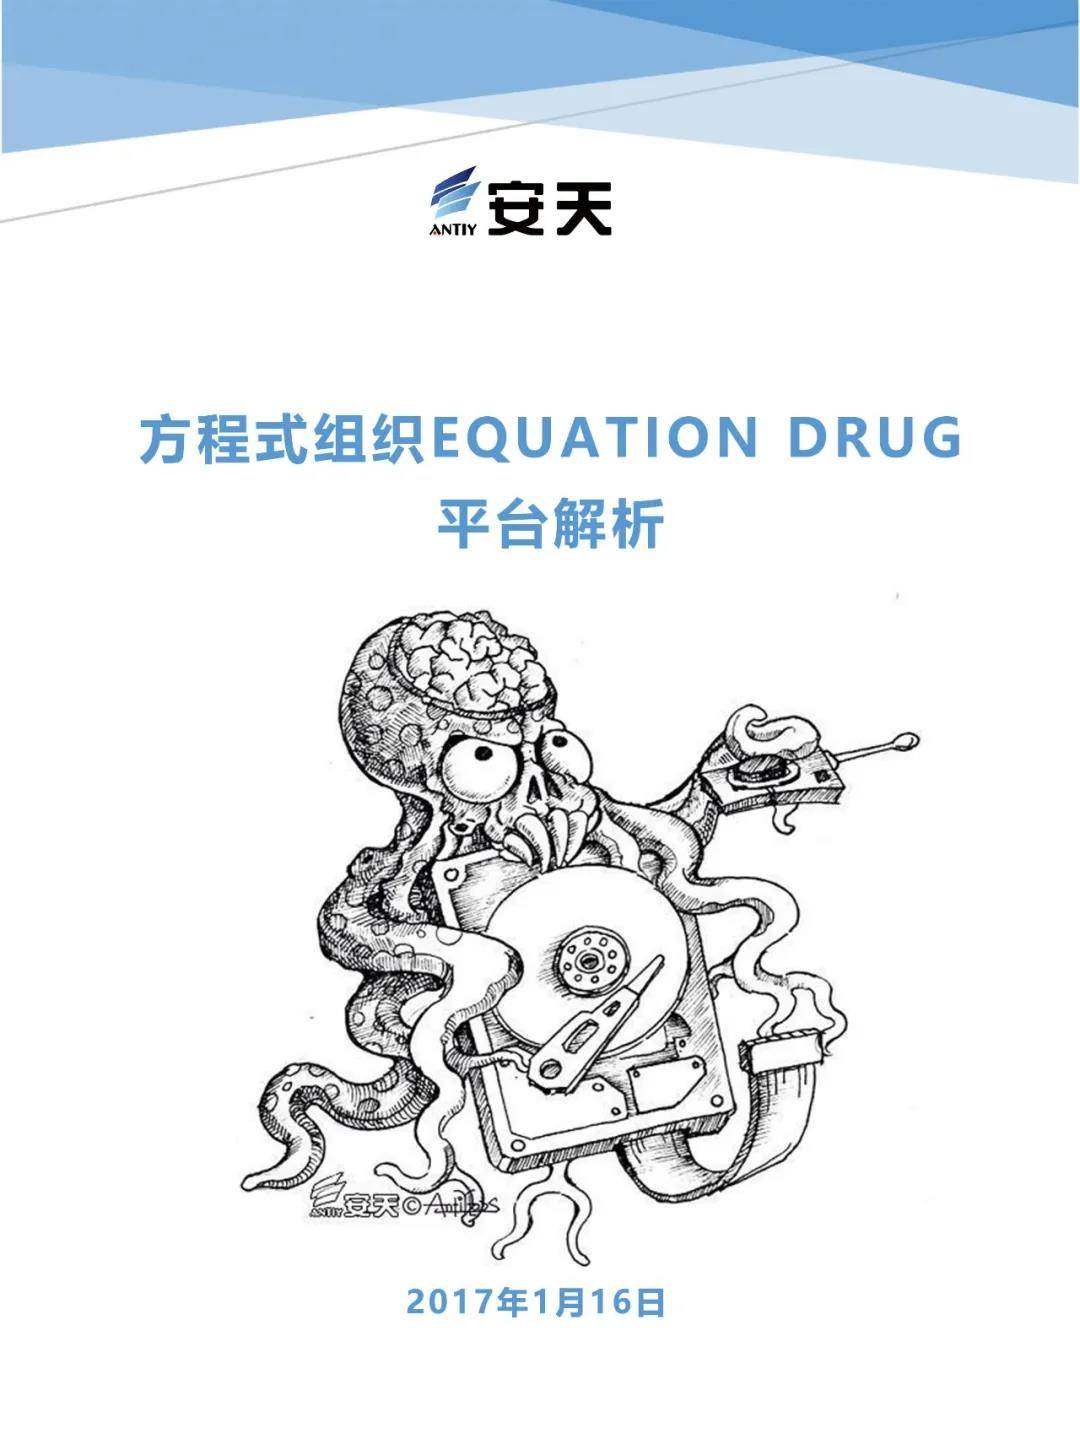 EQUATION_DRUG.jpg